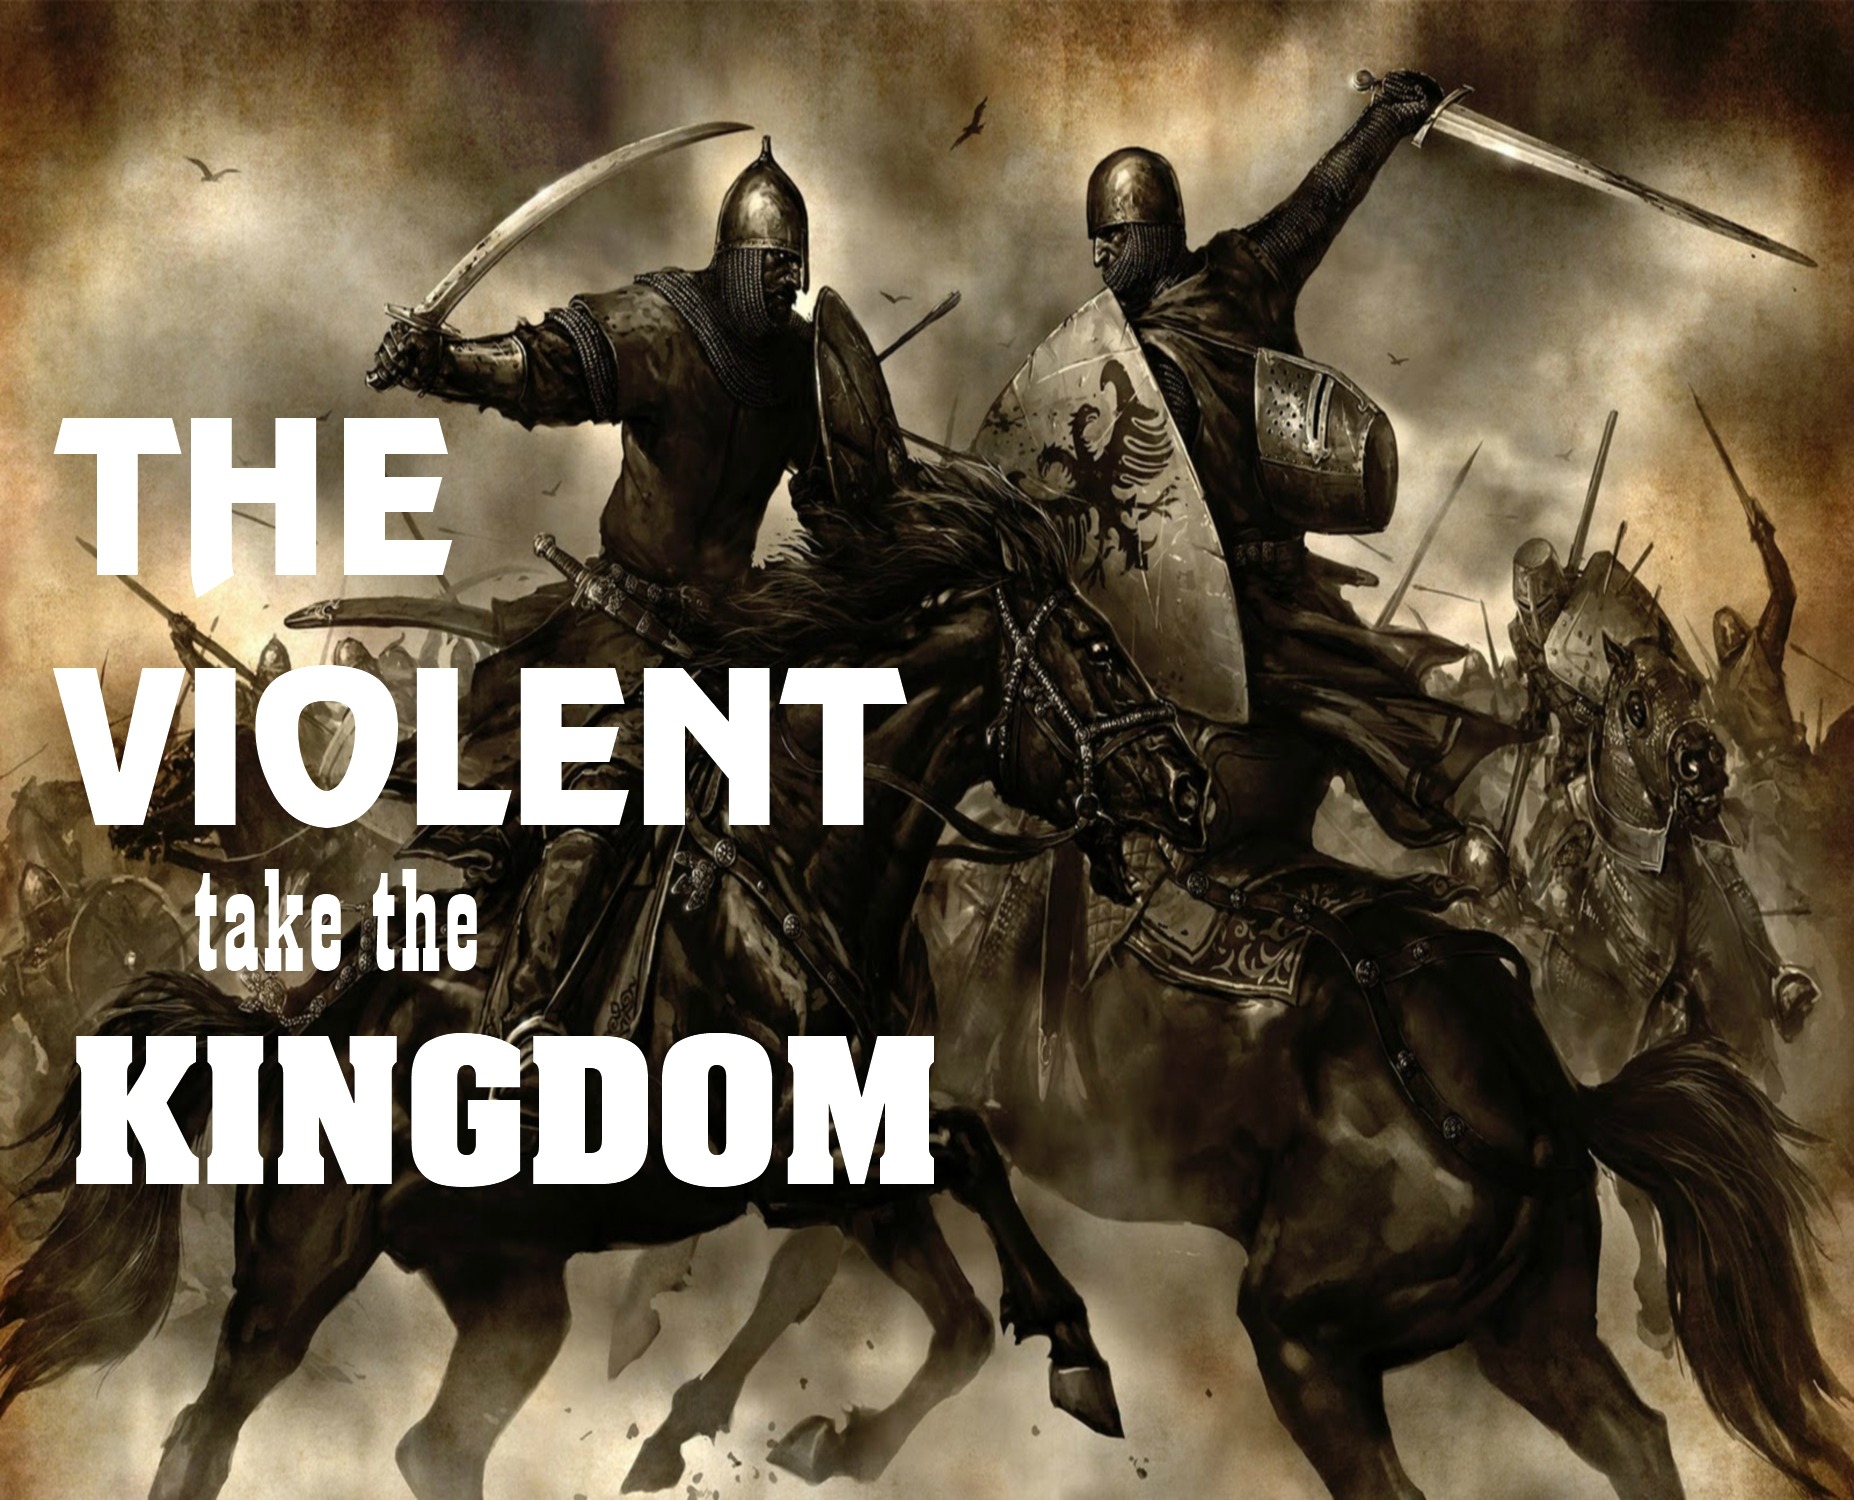 THE VIOLENT TAKE THE KINGDOM (MATT. 11:11-12)